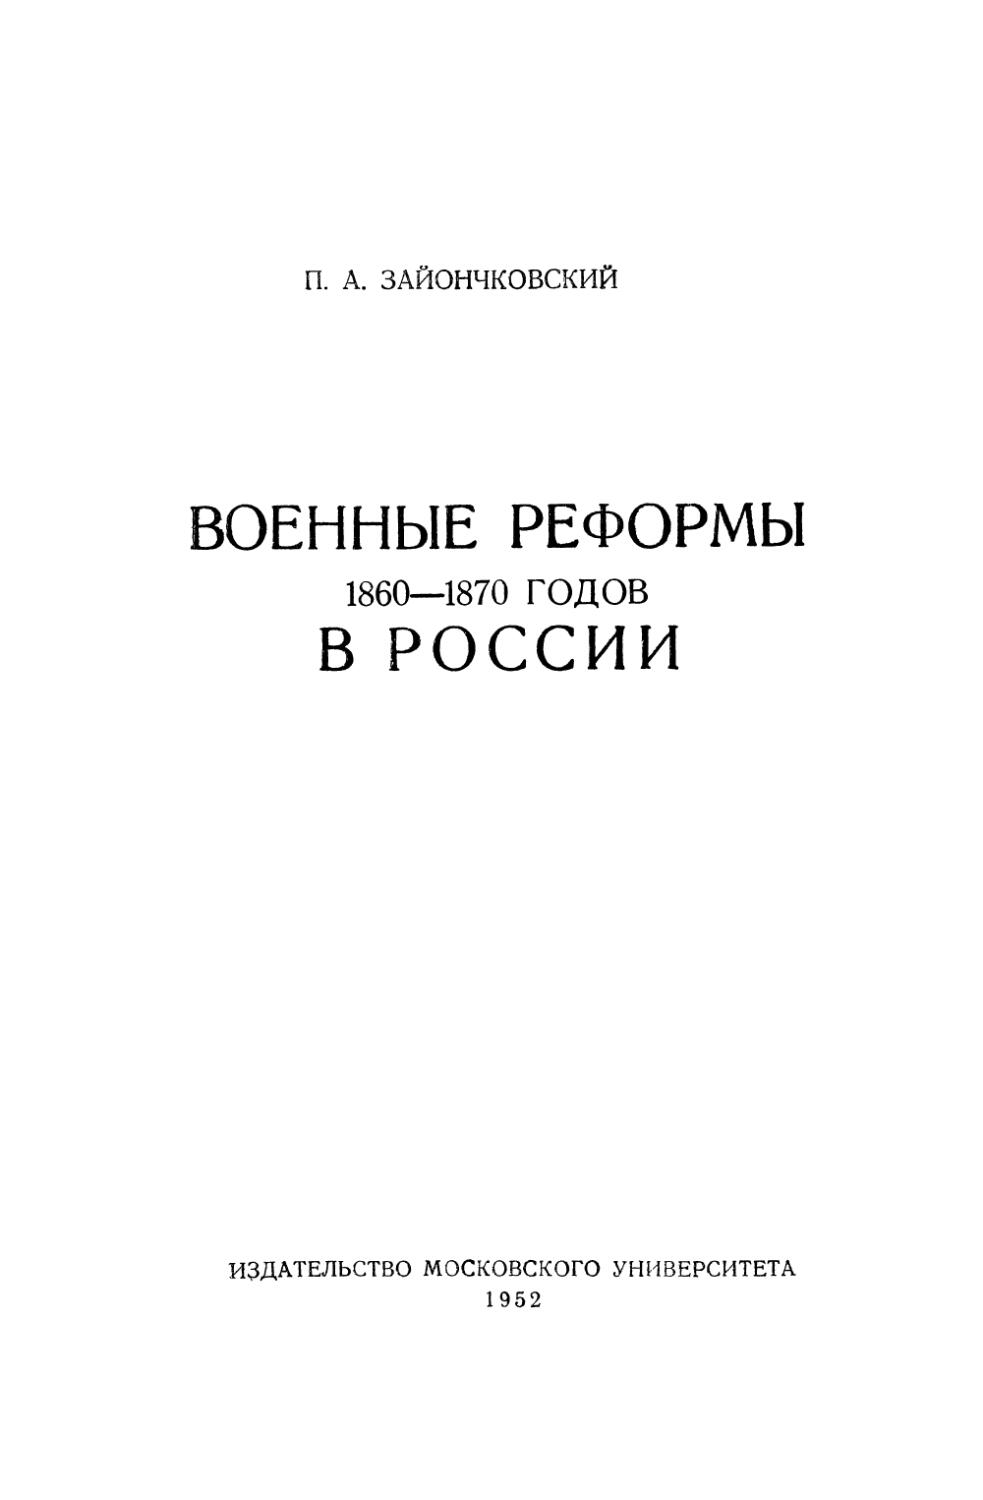 Зайончковский П.А. Военные реформы 1860-1870 гг. в России - 1952